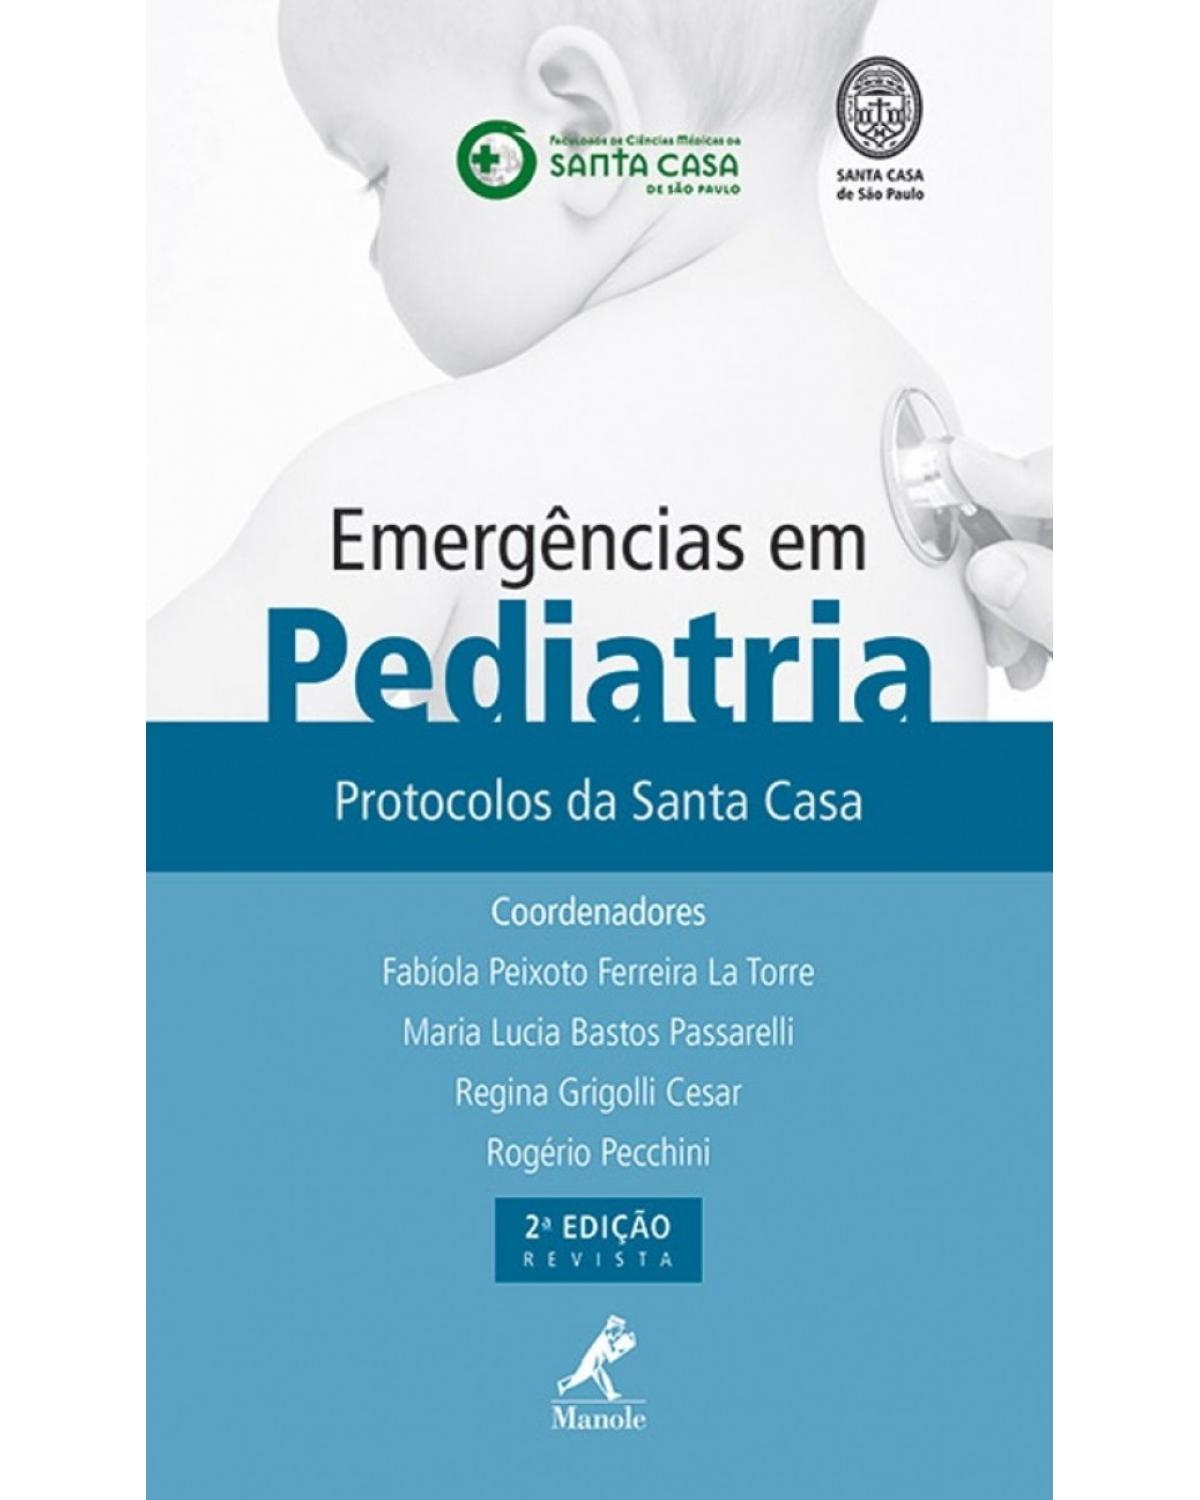 Emergências em pediatria - Protocolos da Santa Casa - 2ª Edição | 2013